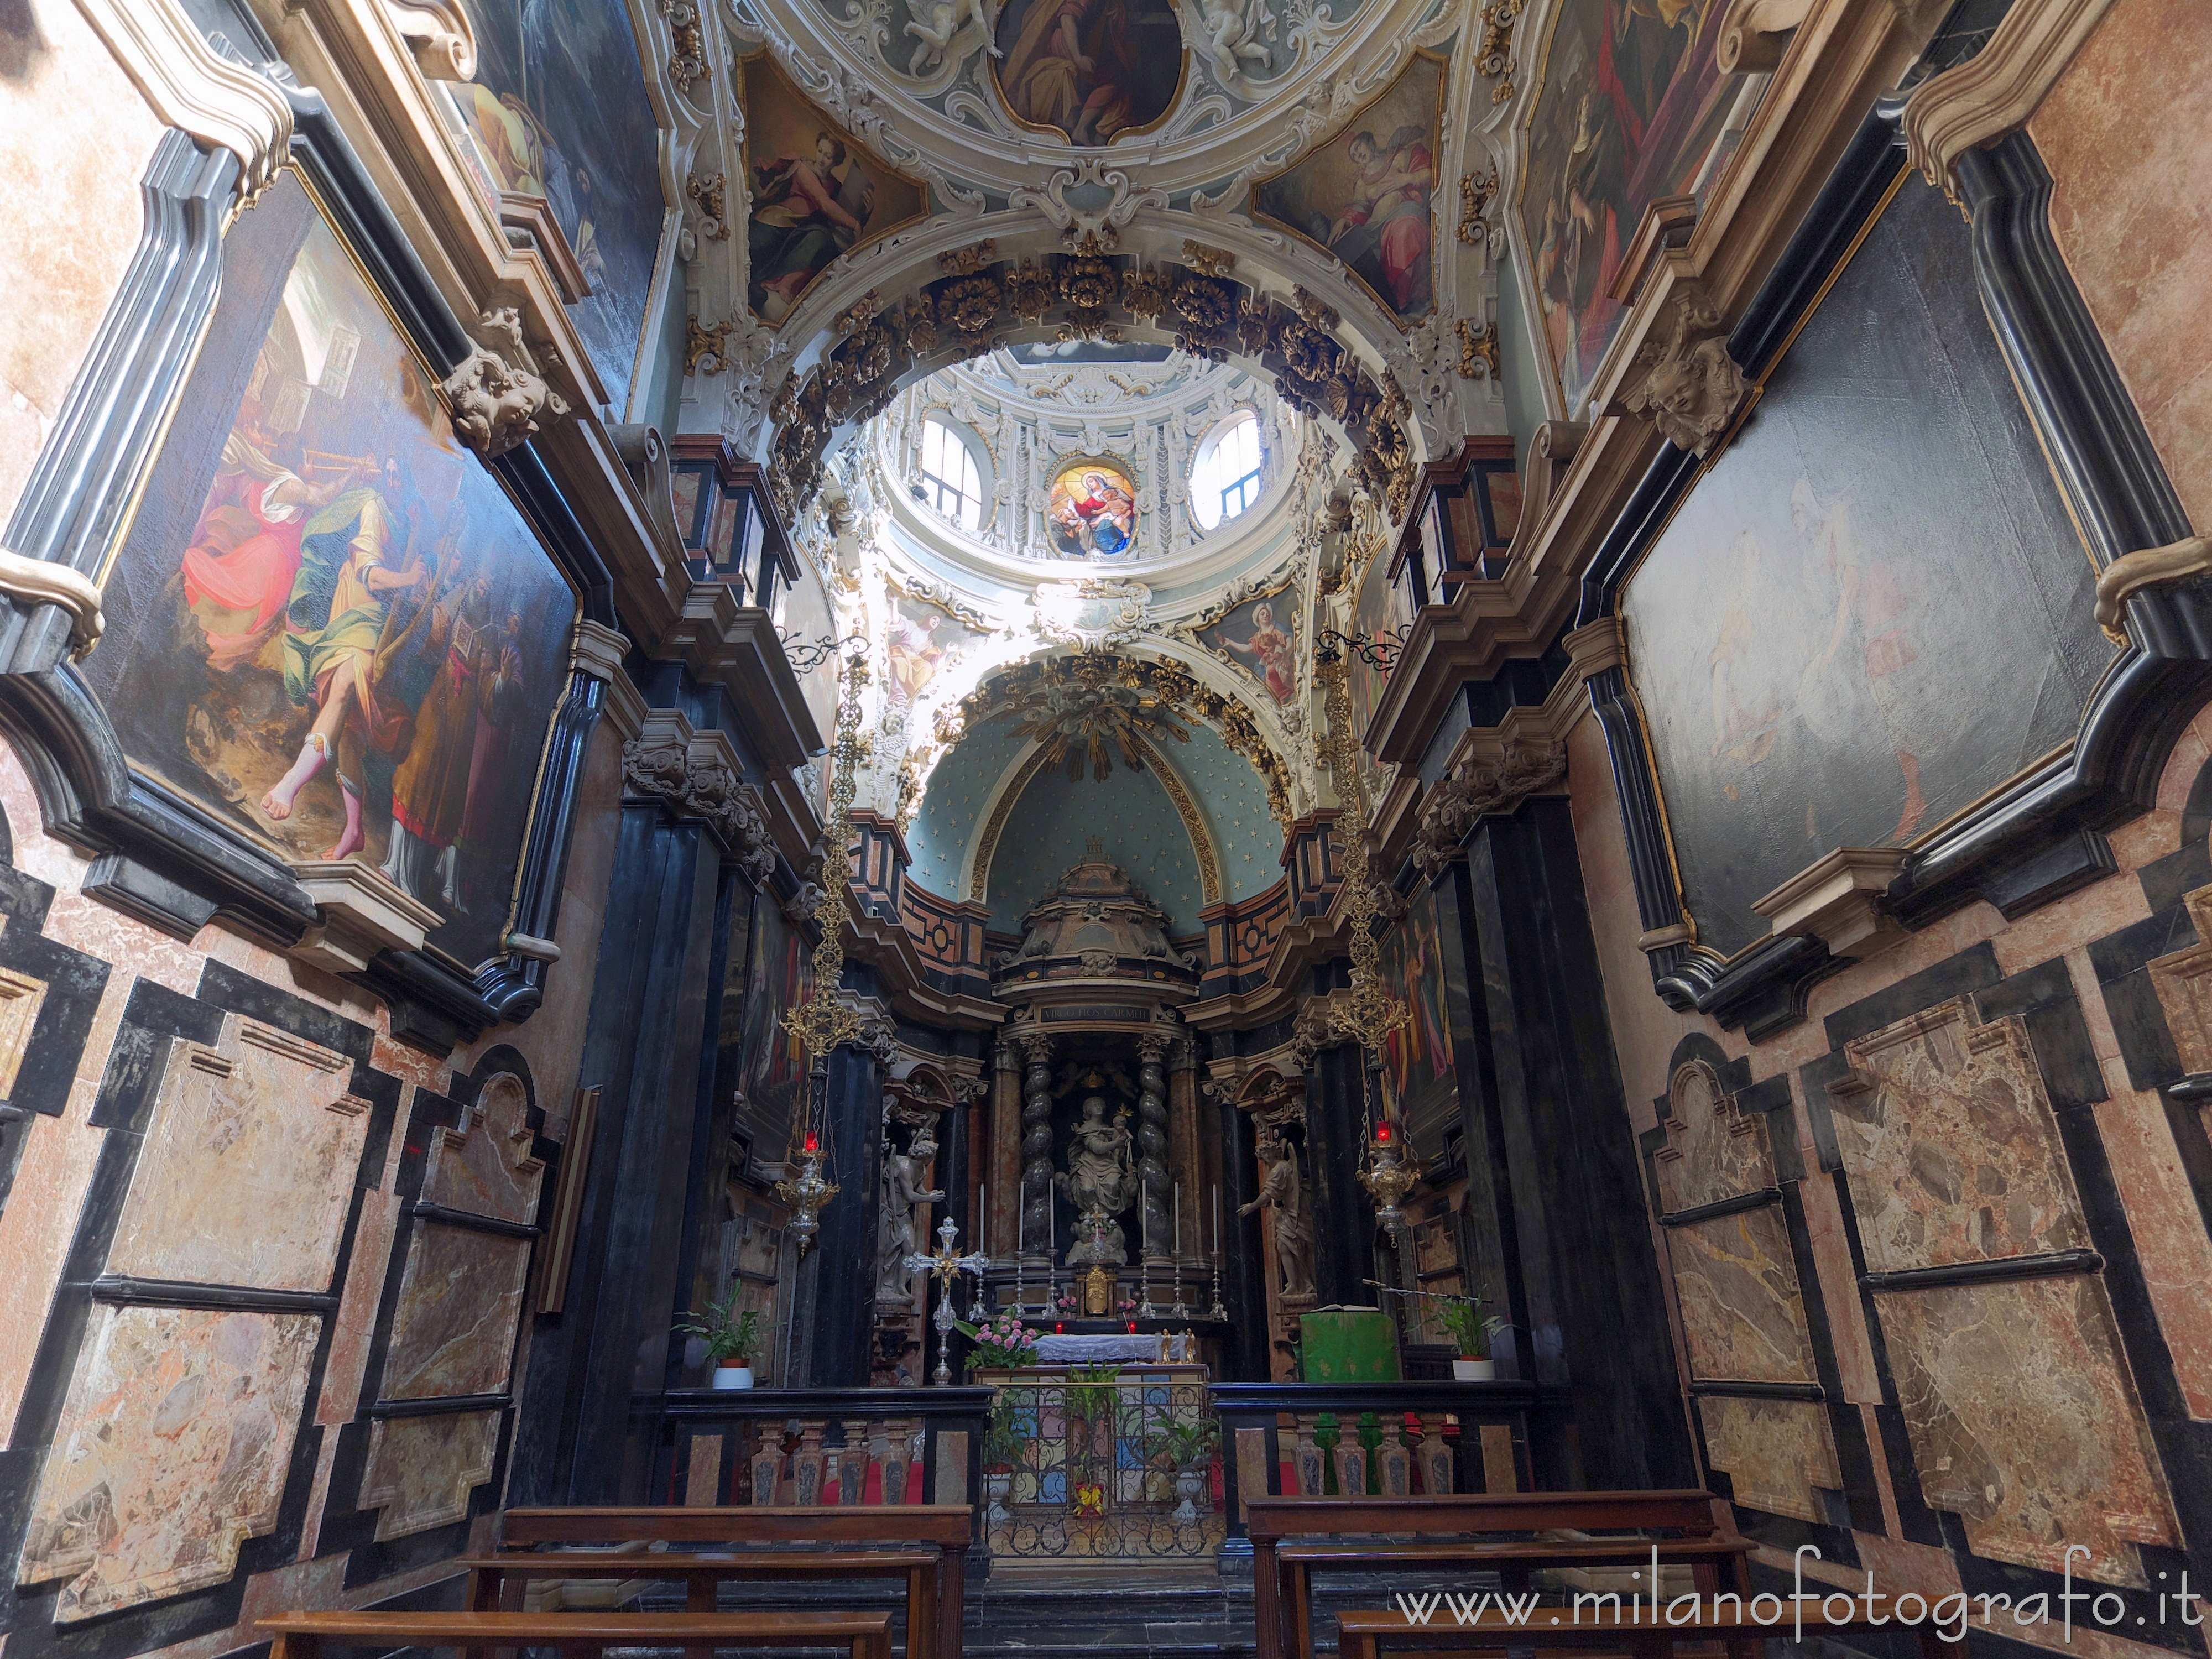 Milano: Dentro alla Cappella della Madonna del Carmine nella Chiesa di Santa Maria del Carmine - Milano